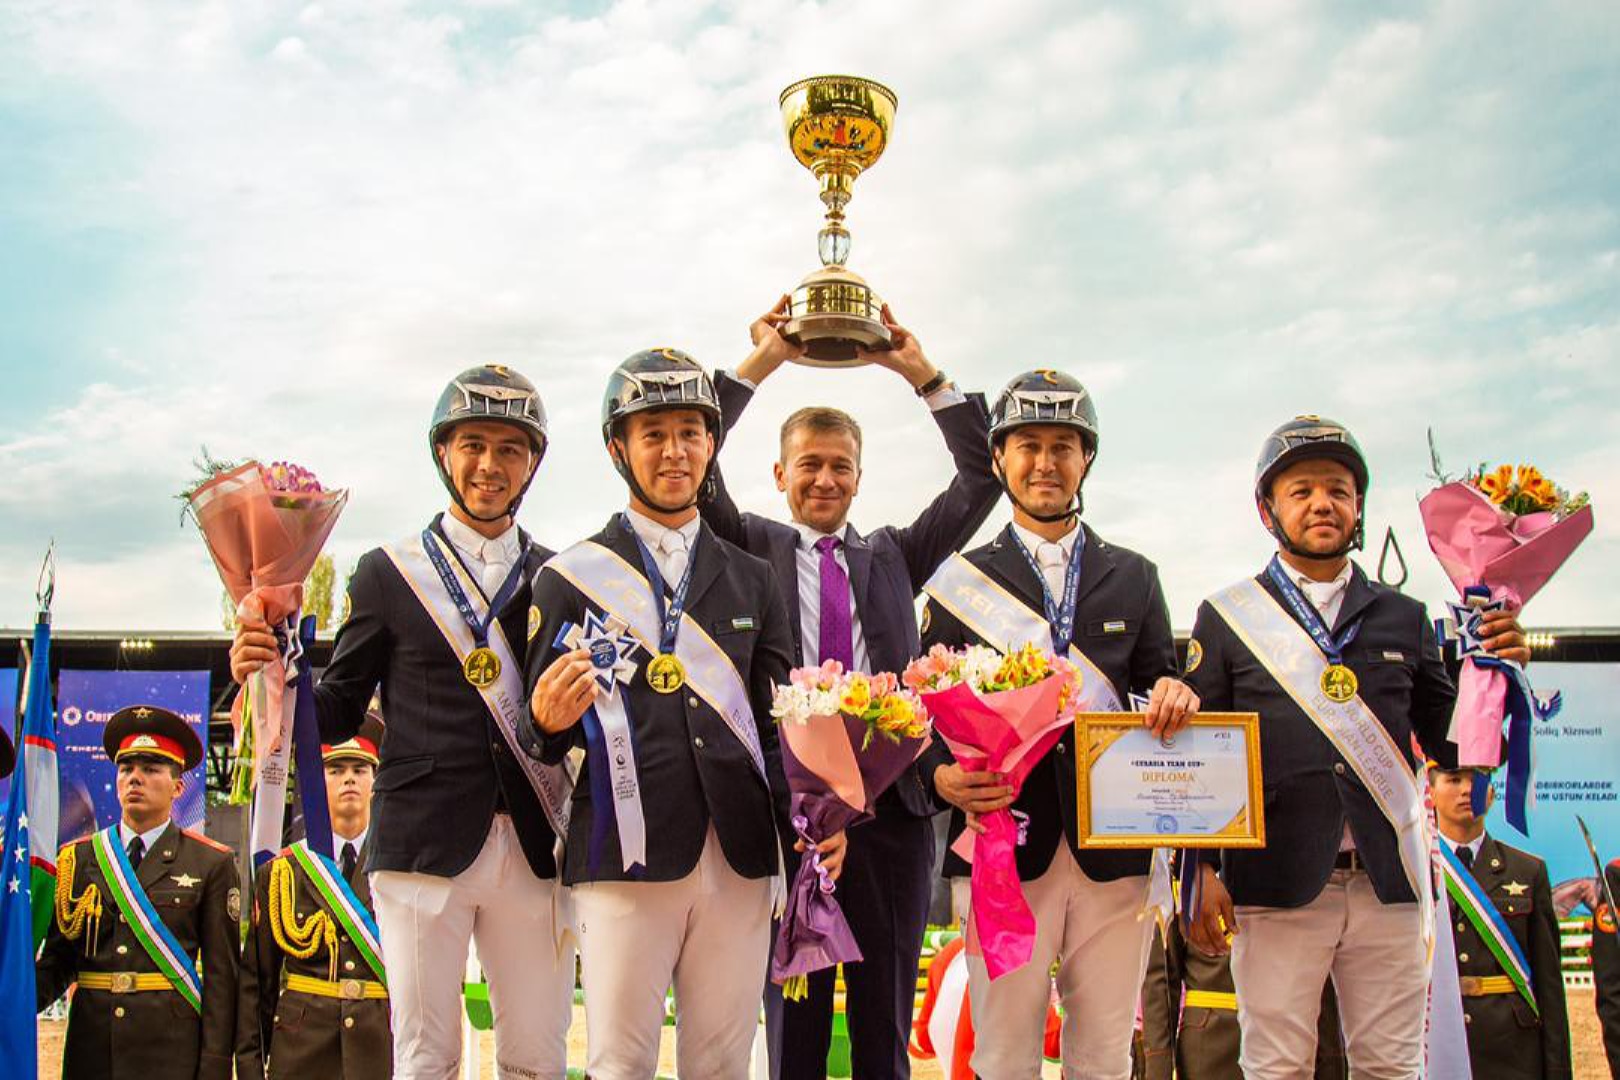 Узбекистан представит Евразийскую ассоциацию конного спорта в финале Кубка Наций по конкуру в Барселоне